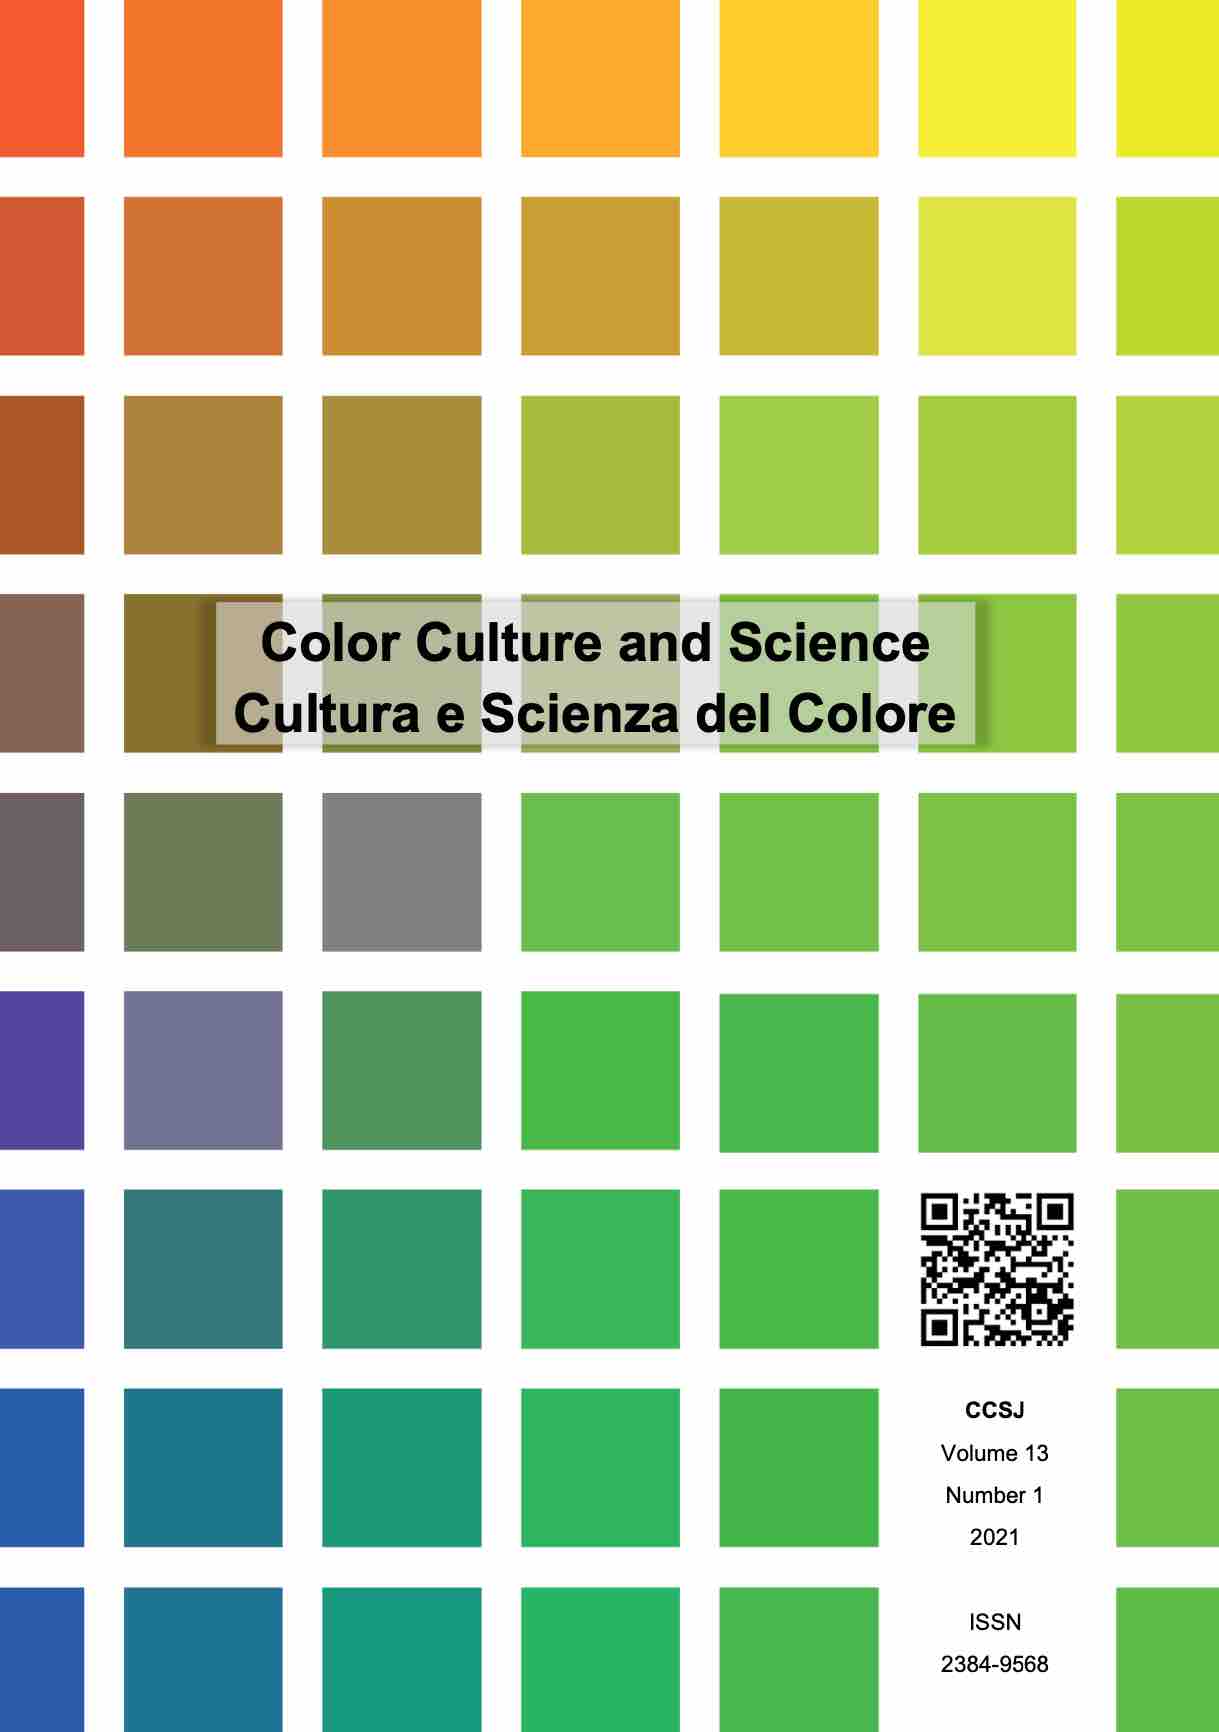 Cultura e Scienza del Colore - Color Culture and Sience Journal 